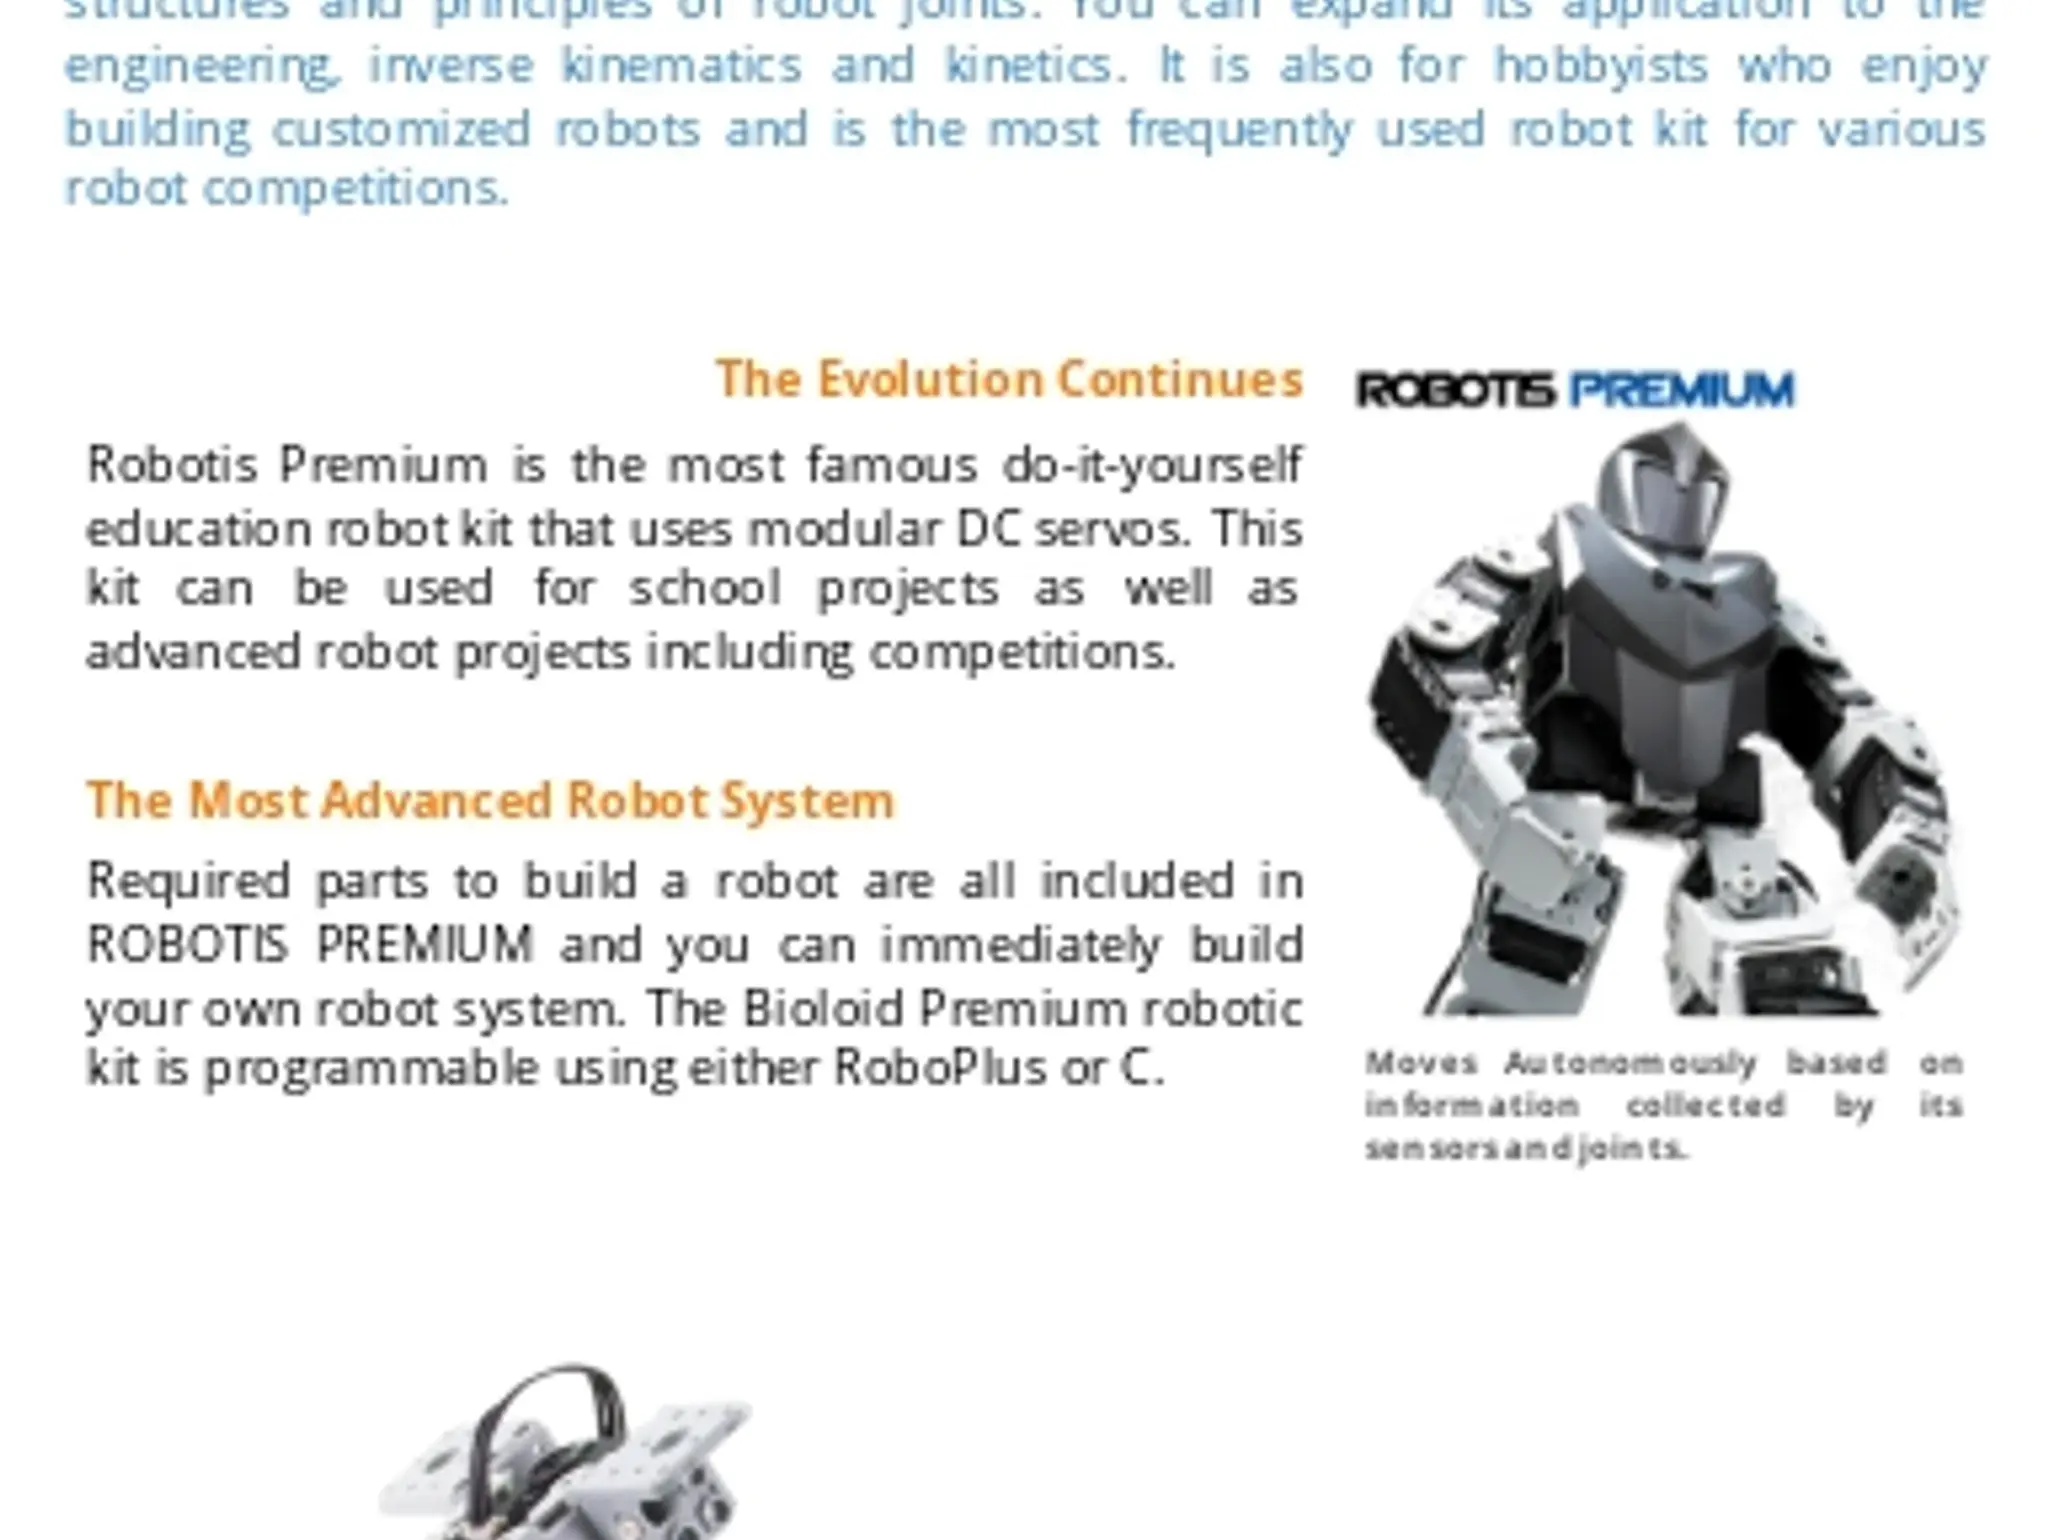 Robotis Premium